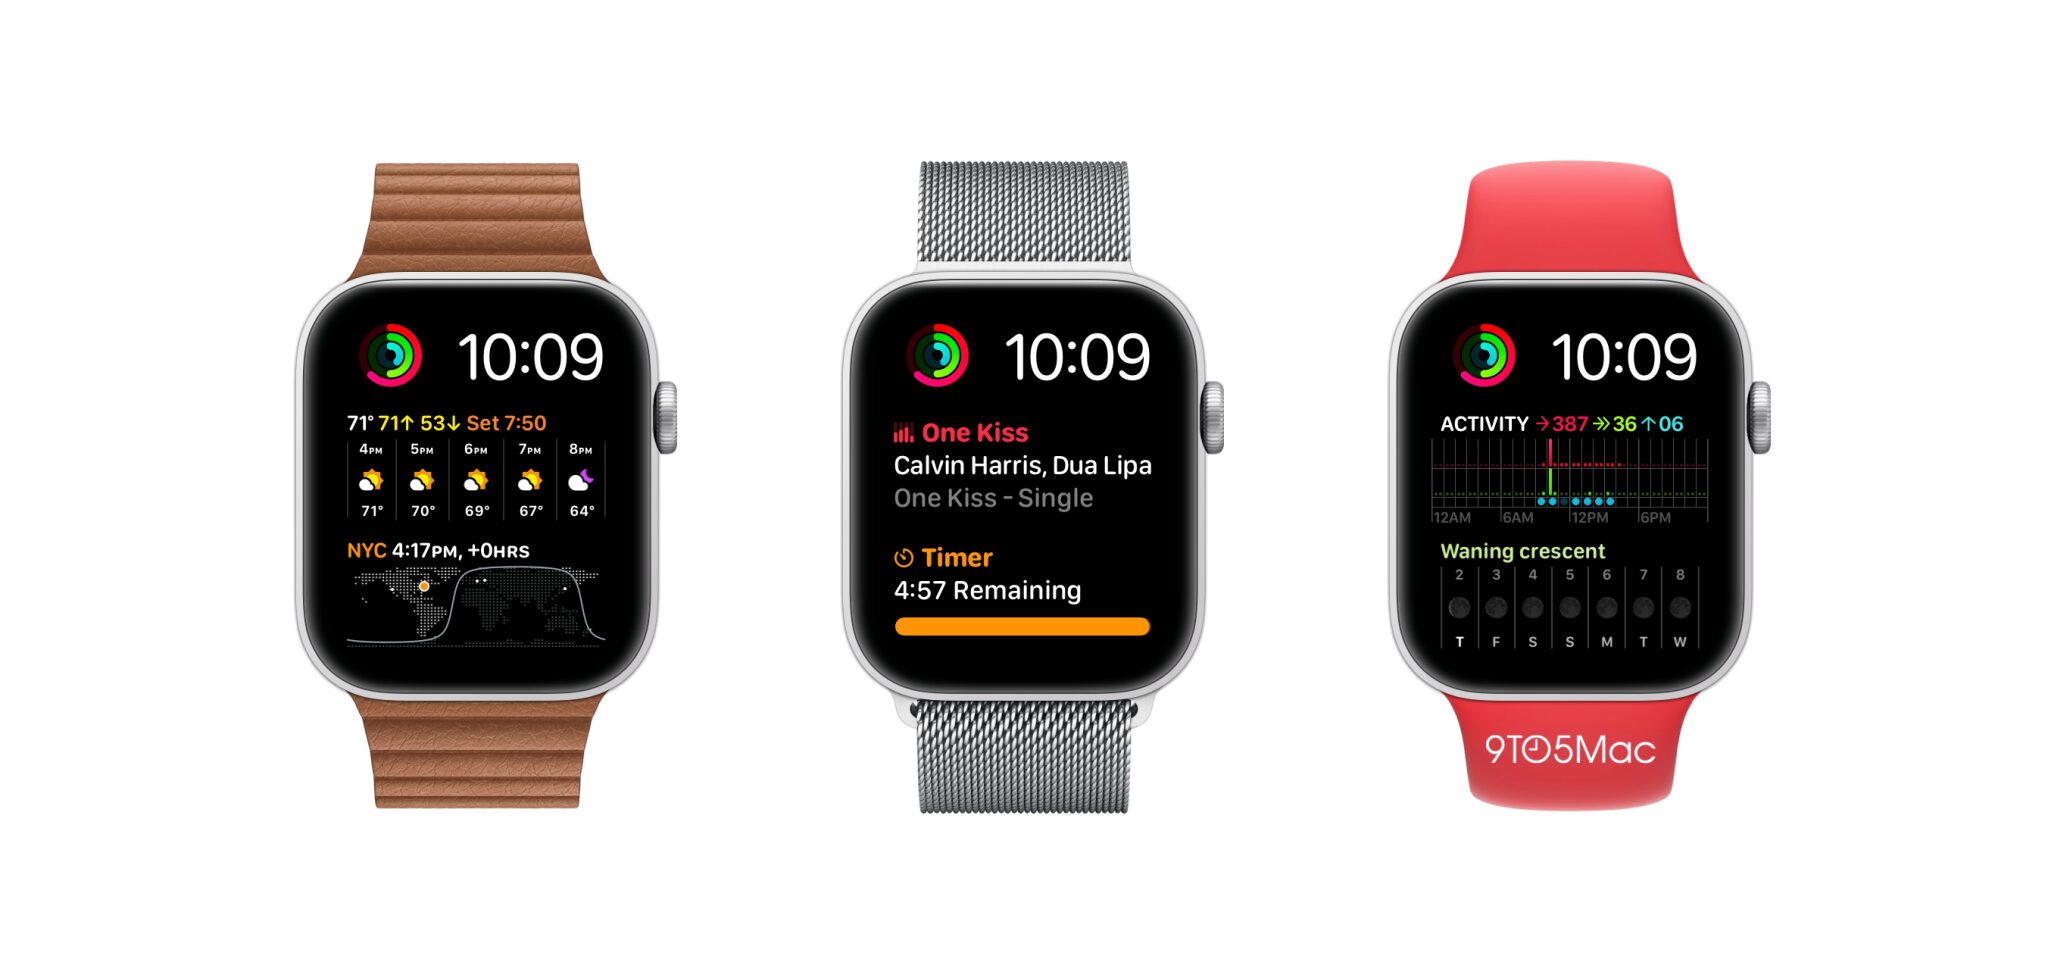 В Сеть попали размеры дисплеев Apple Watch и их внешний вид с помощью этих макетов